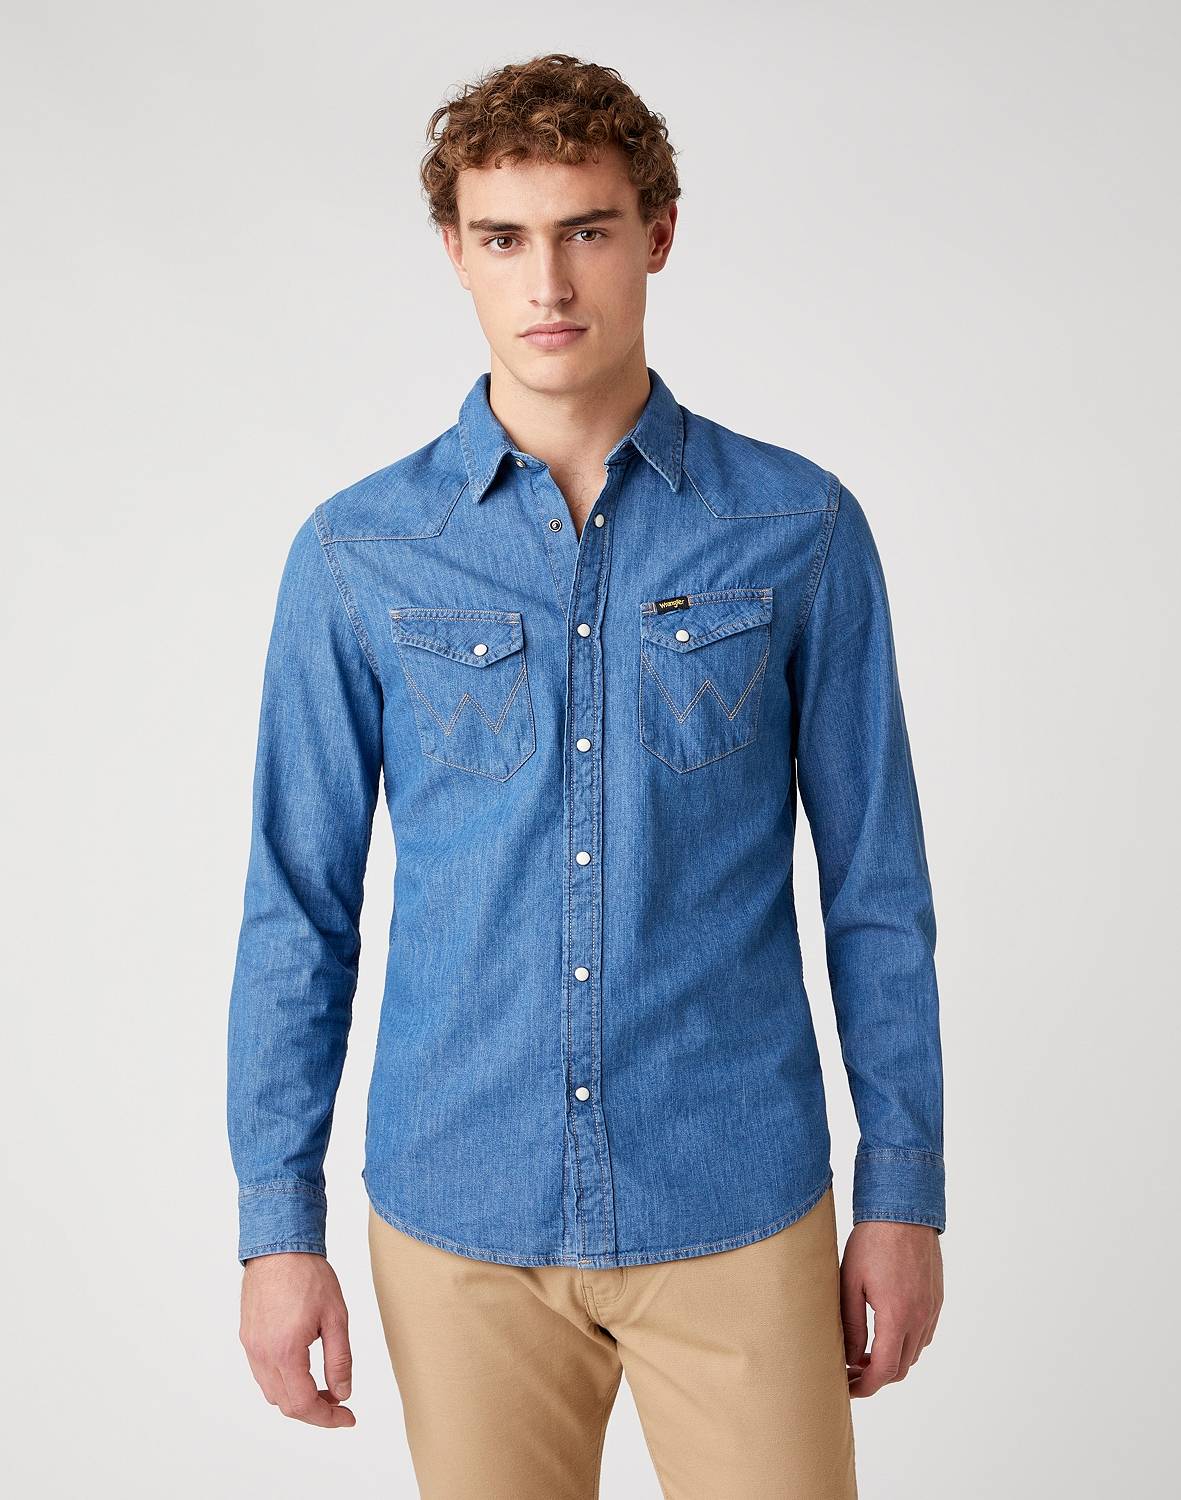 Джинсовая рубашка мужская Wrangler W5F25K14V синяя 2XL